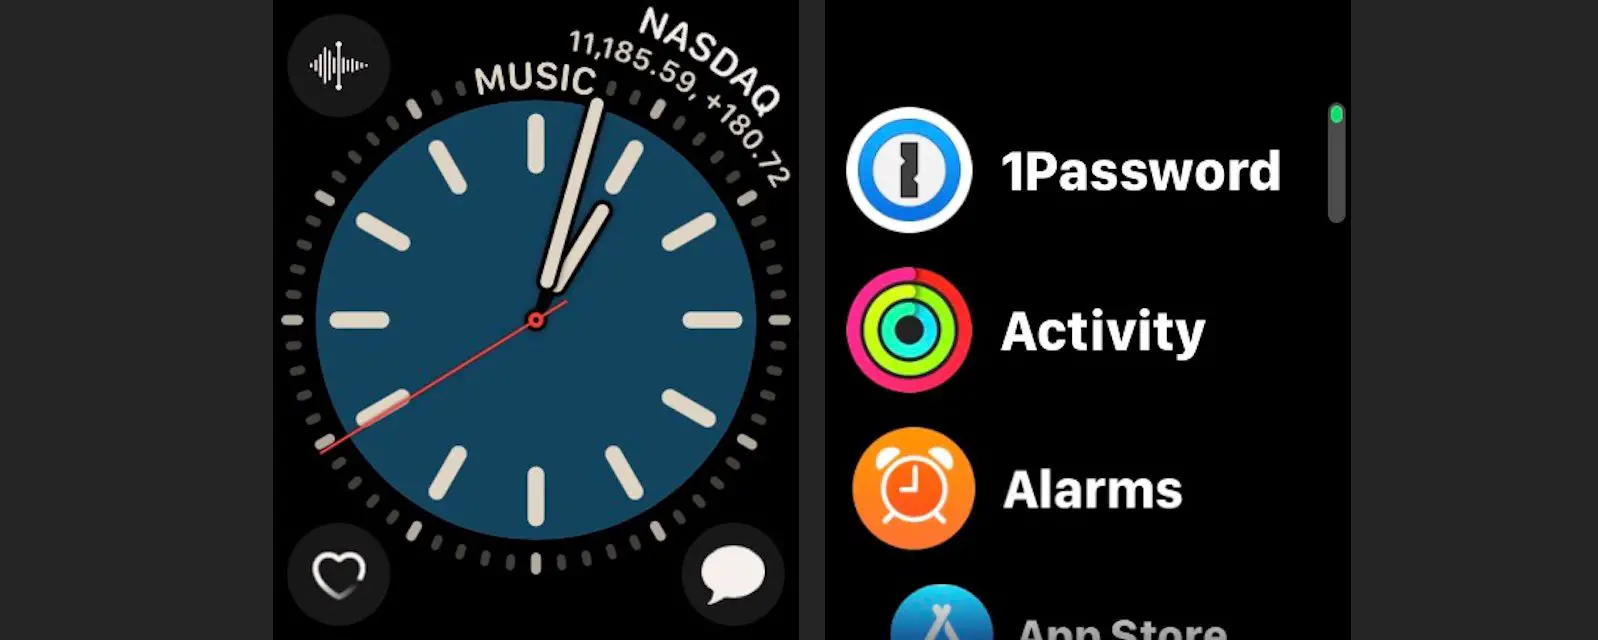 Pressione o botão lateral em um Apple Watch e role pelos aplicativos ativos